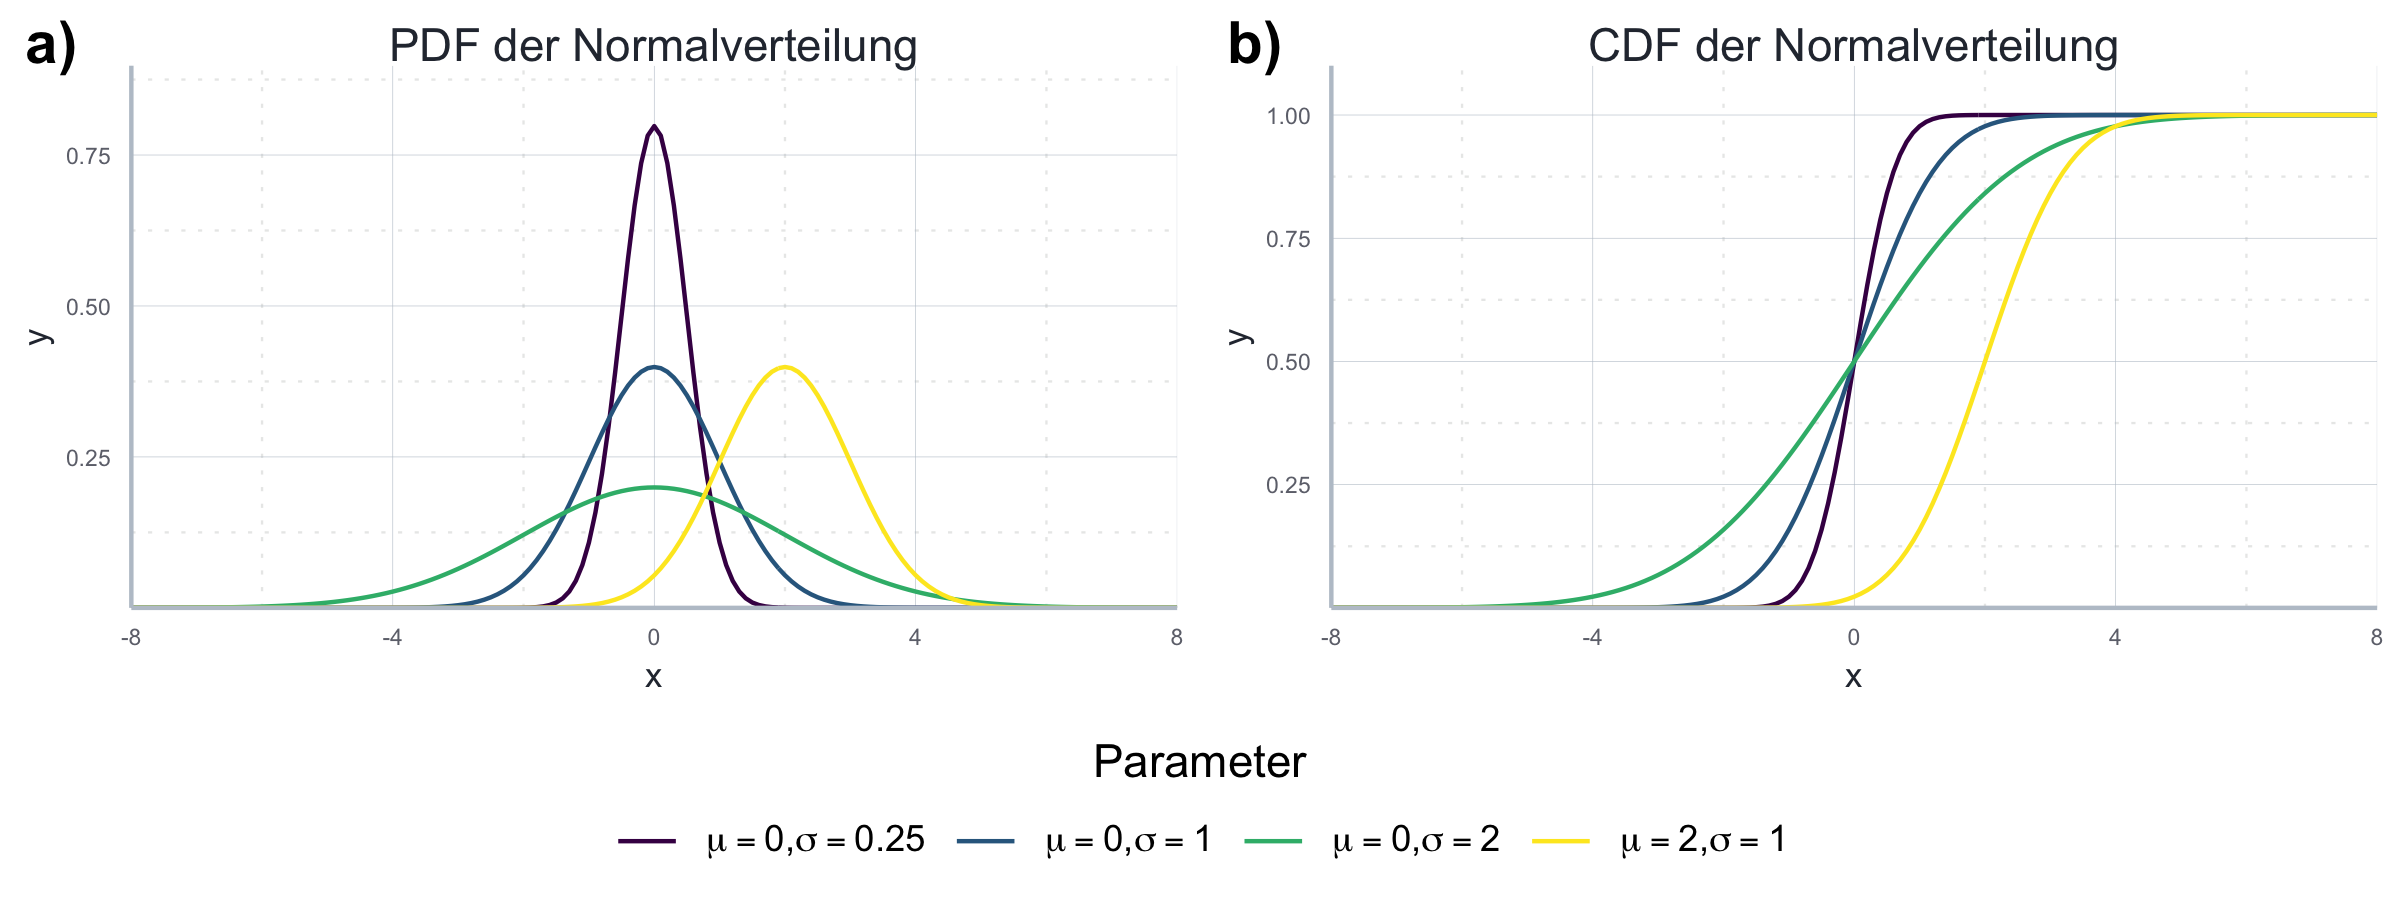 Vergleich der PDF und CDF der Normalverteilung.